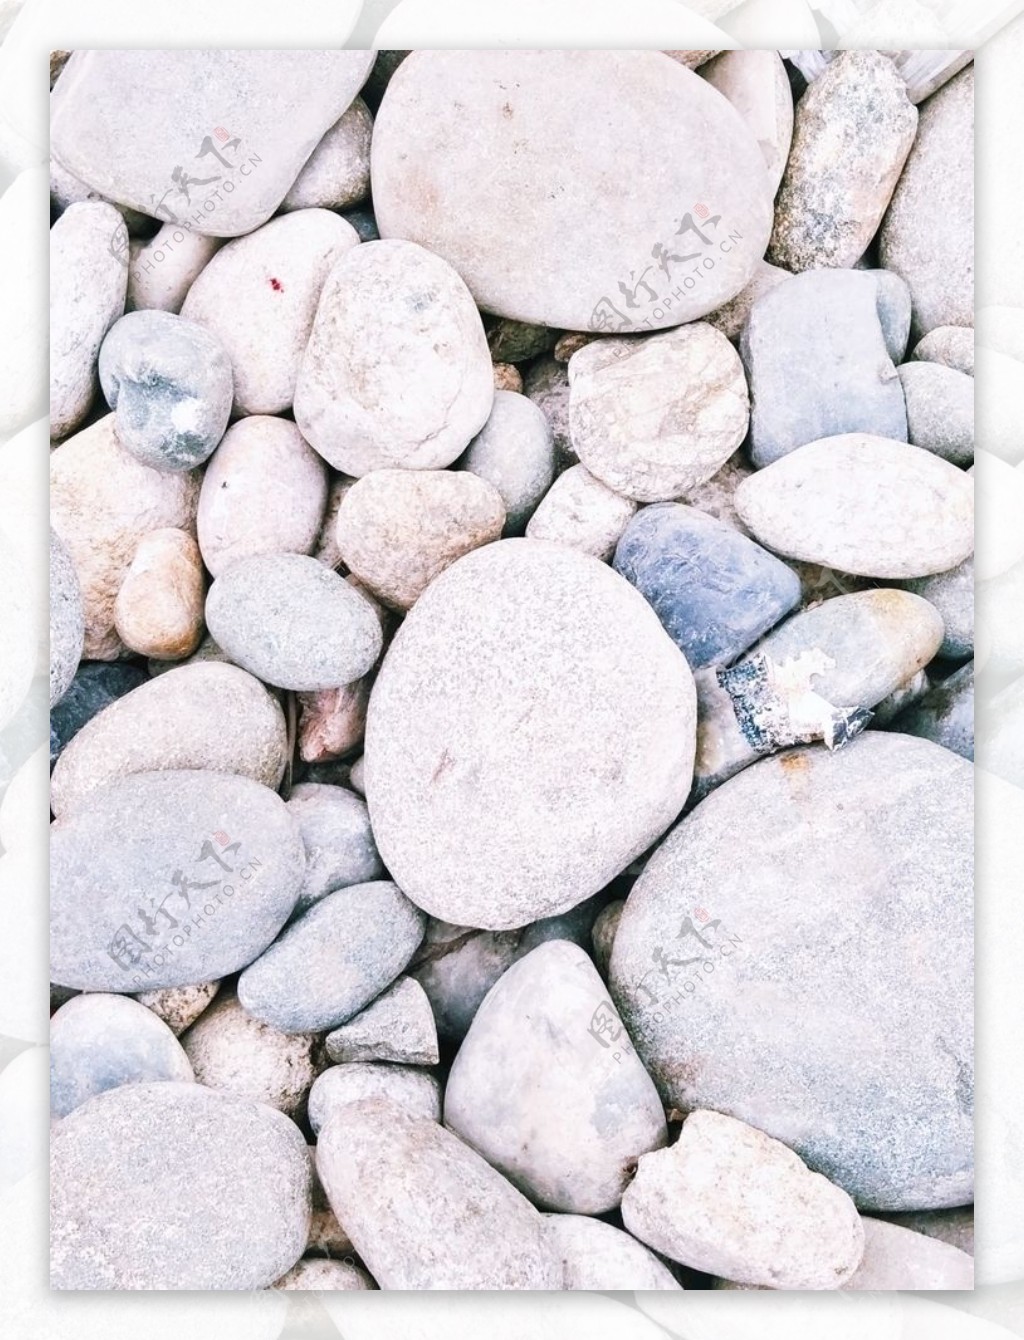 鹅卵石自然景观石头装饰